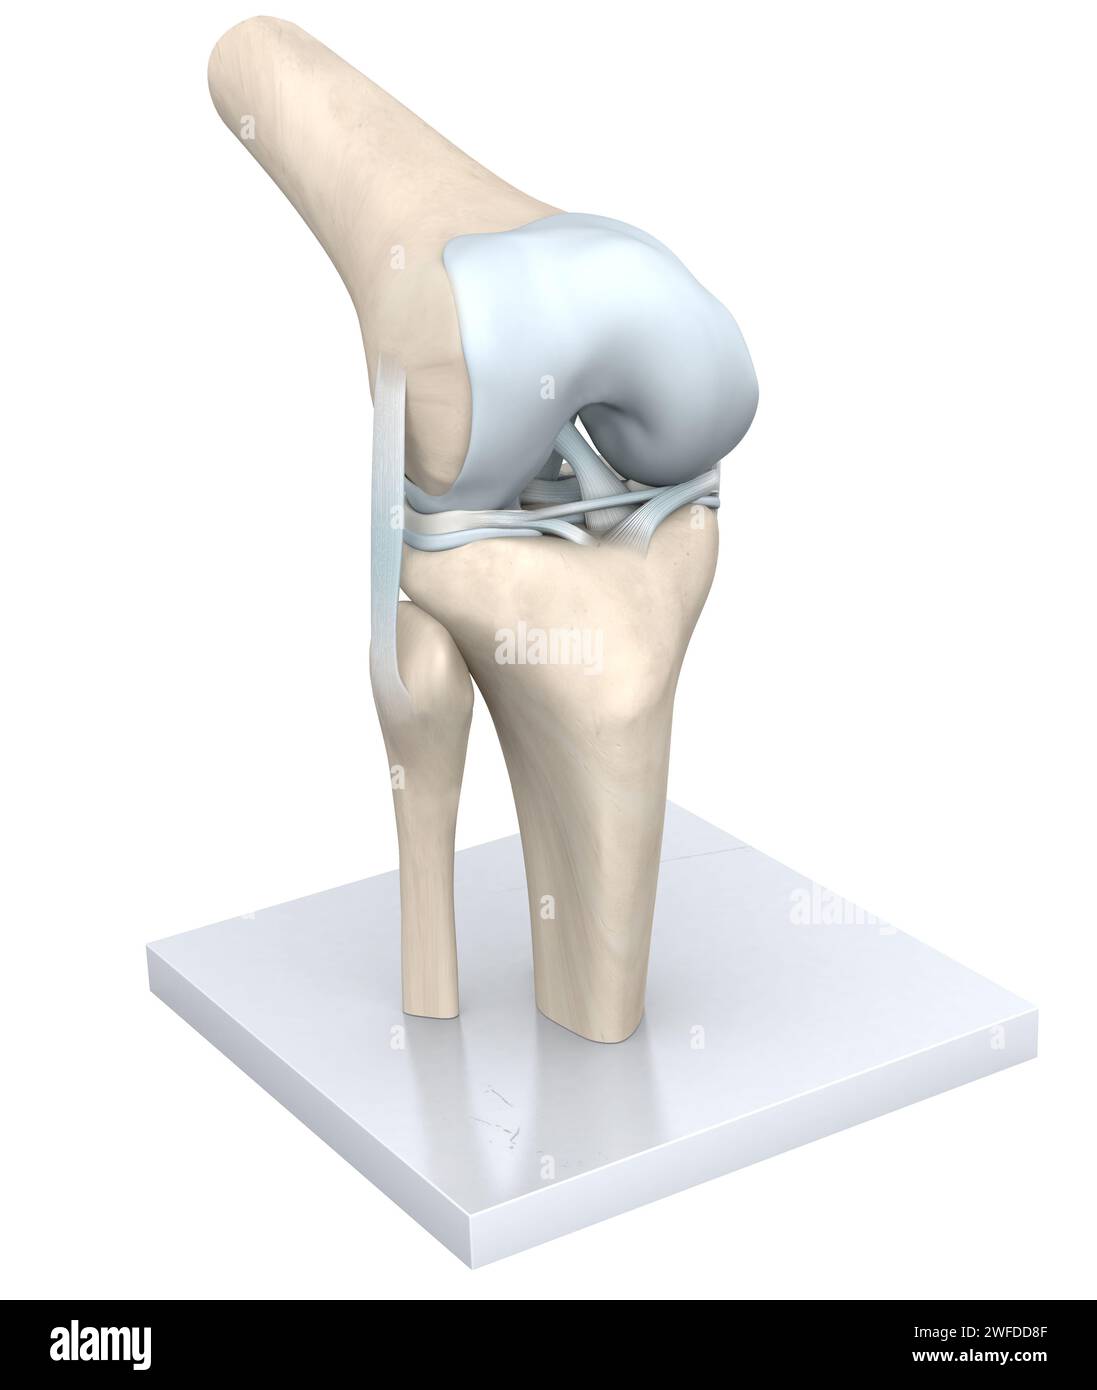 L'articolazione del ginocchio, una complessa struttura a cerniera, collega l'osso della coscia (femore) all'osso dello stinco (tibia), ammortizzato dalla cartilagine, consentendo la flessione, l'estensione Foto Stock